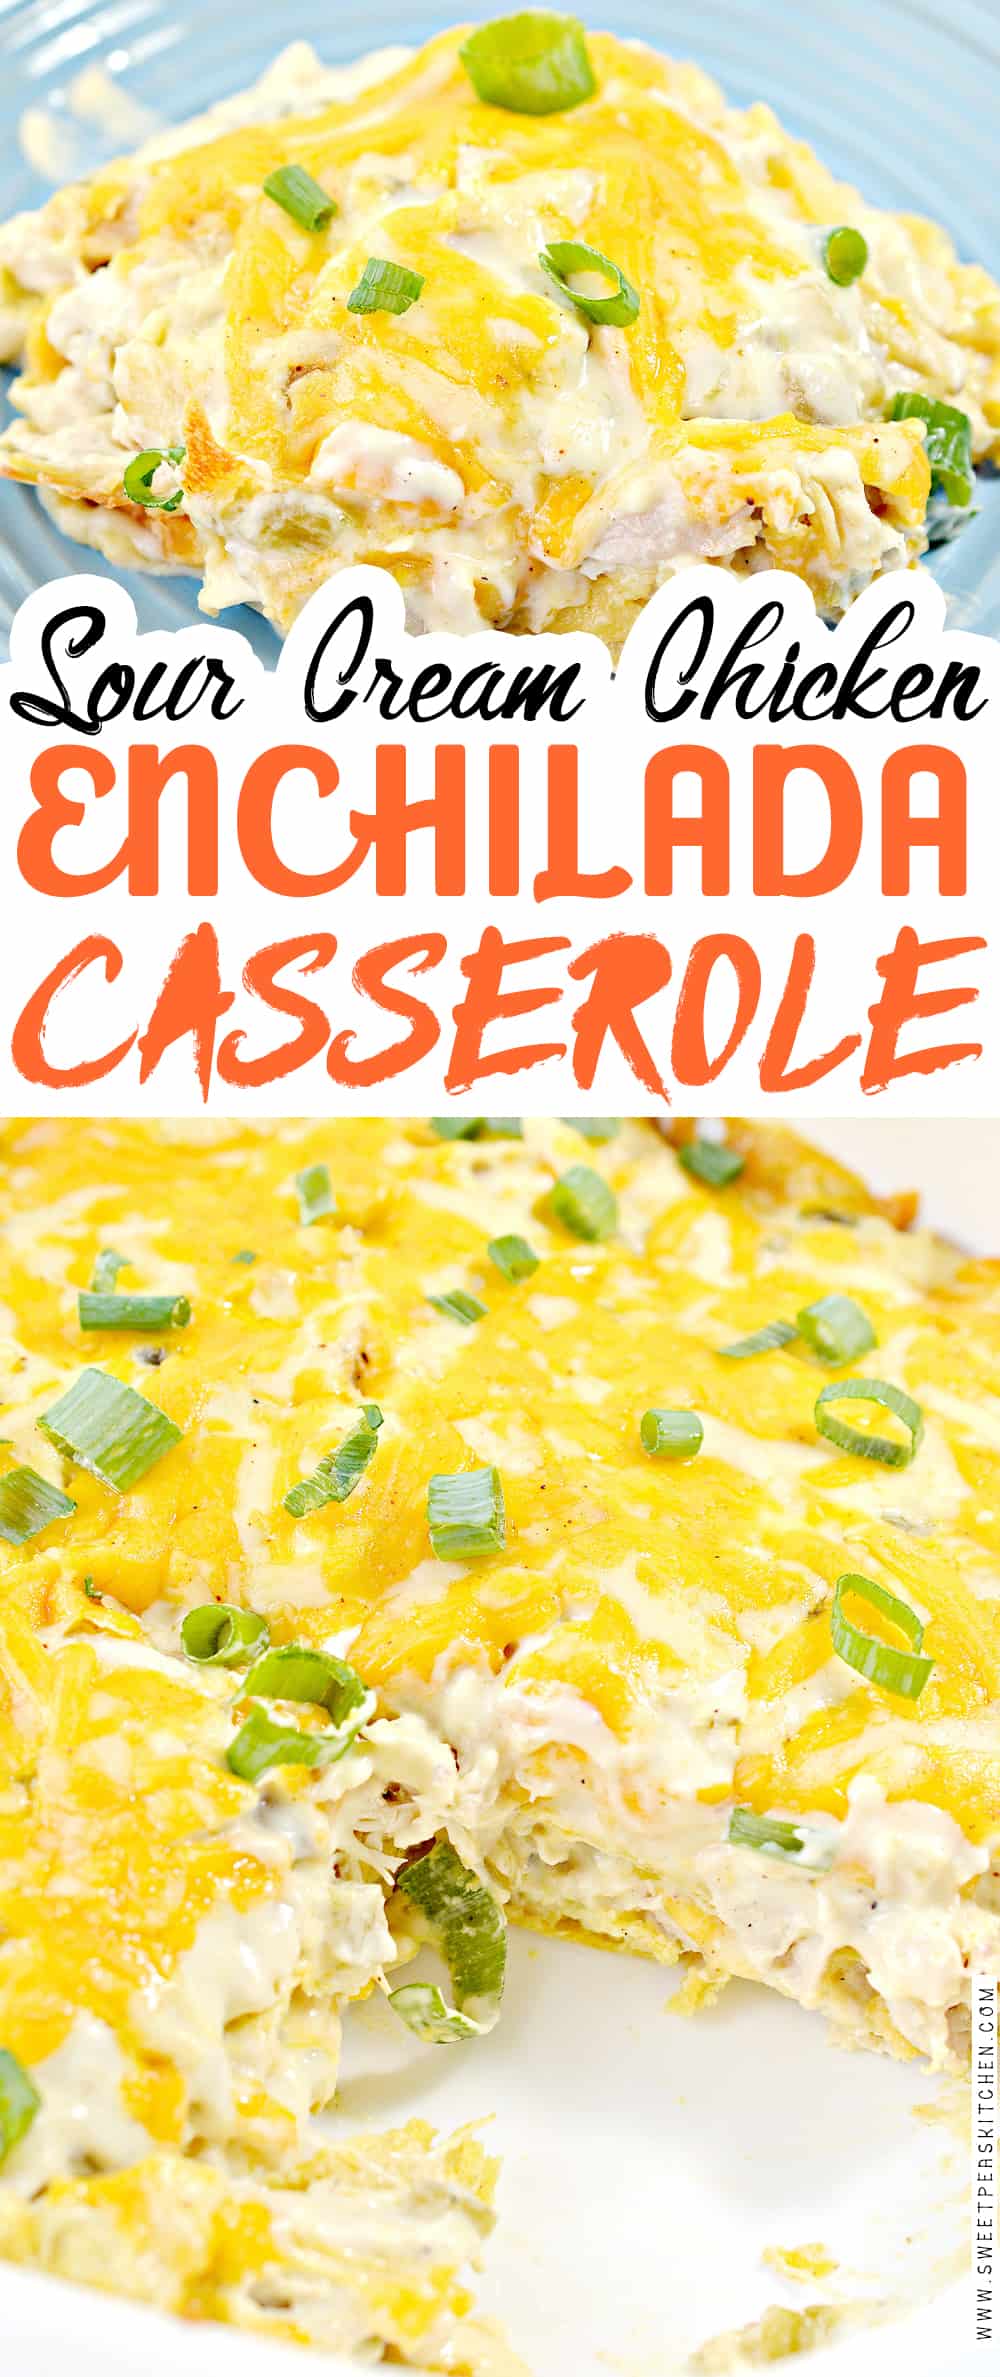 Sour Cream Chicken Enchilada Casserole on pinterest